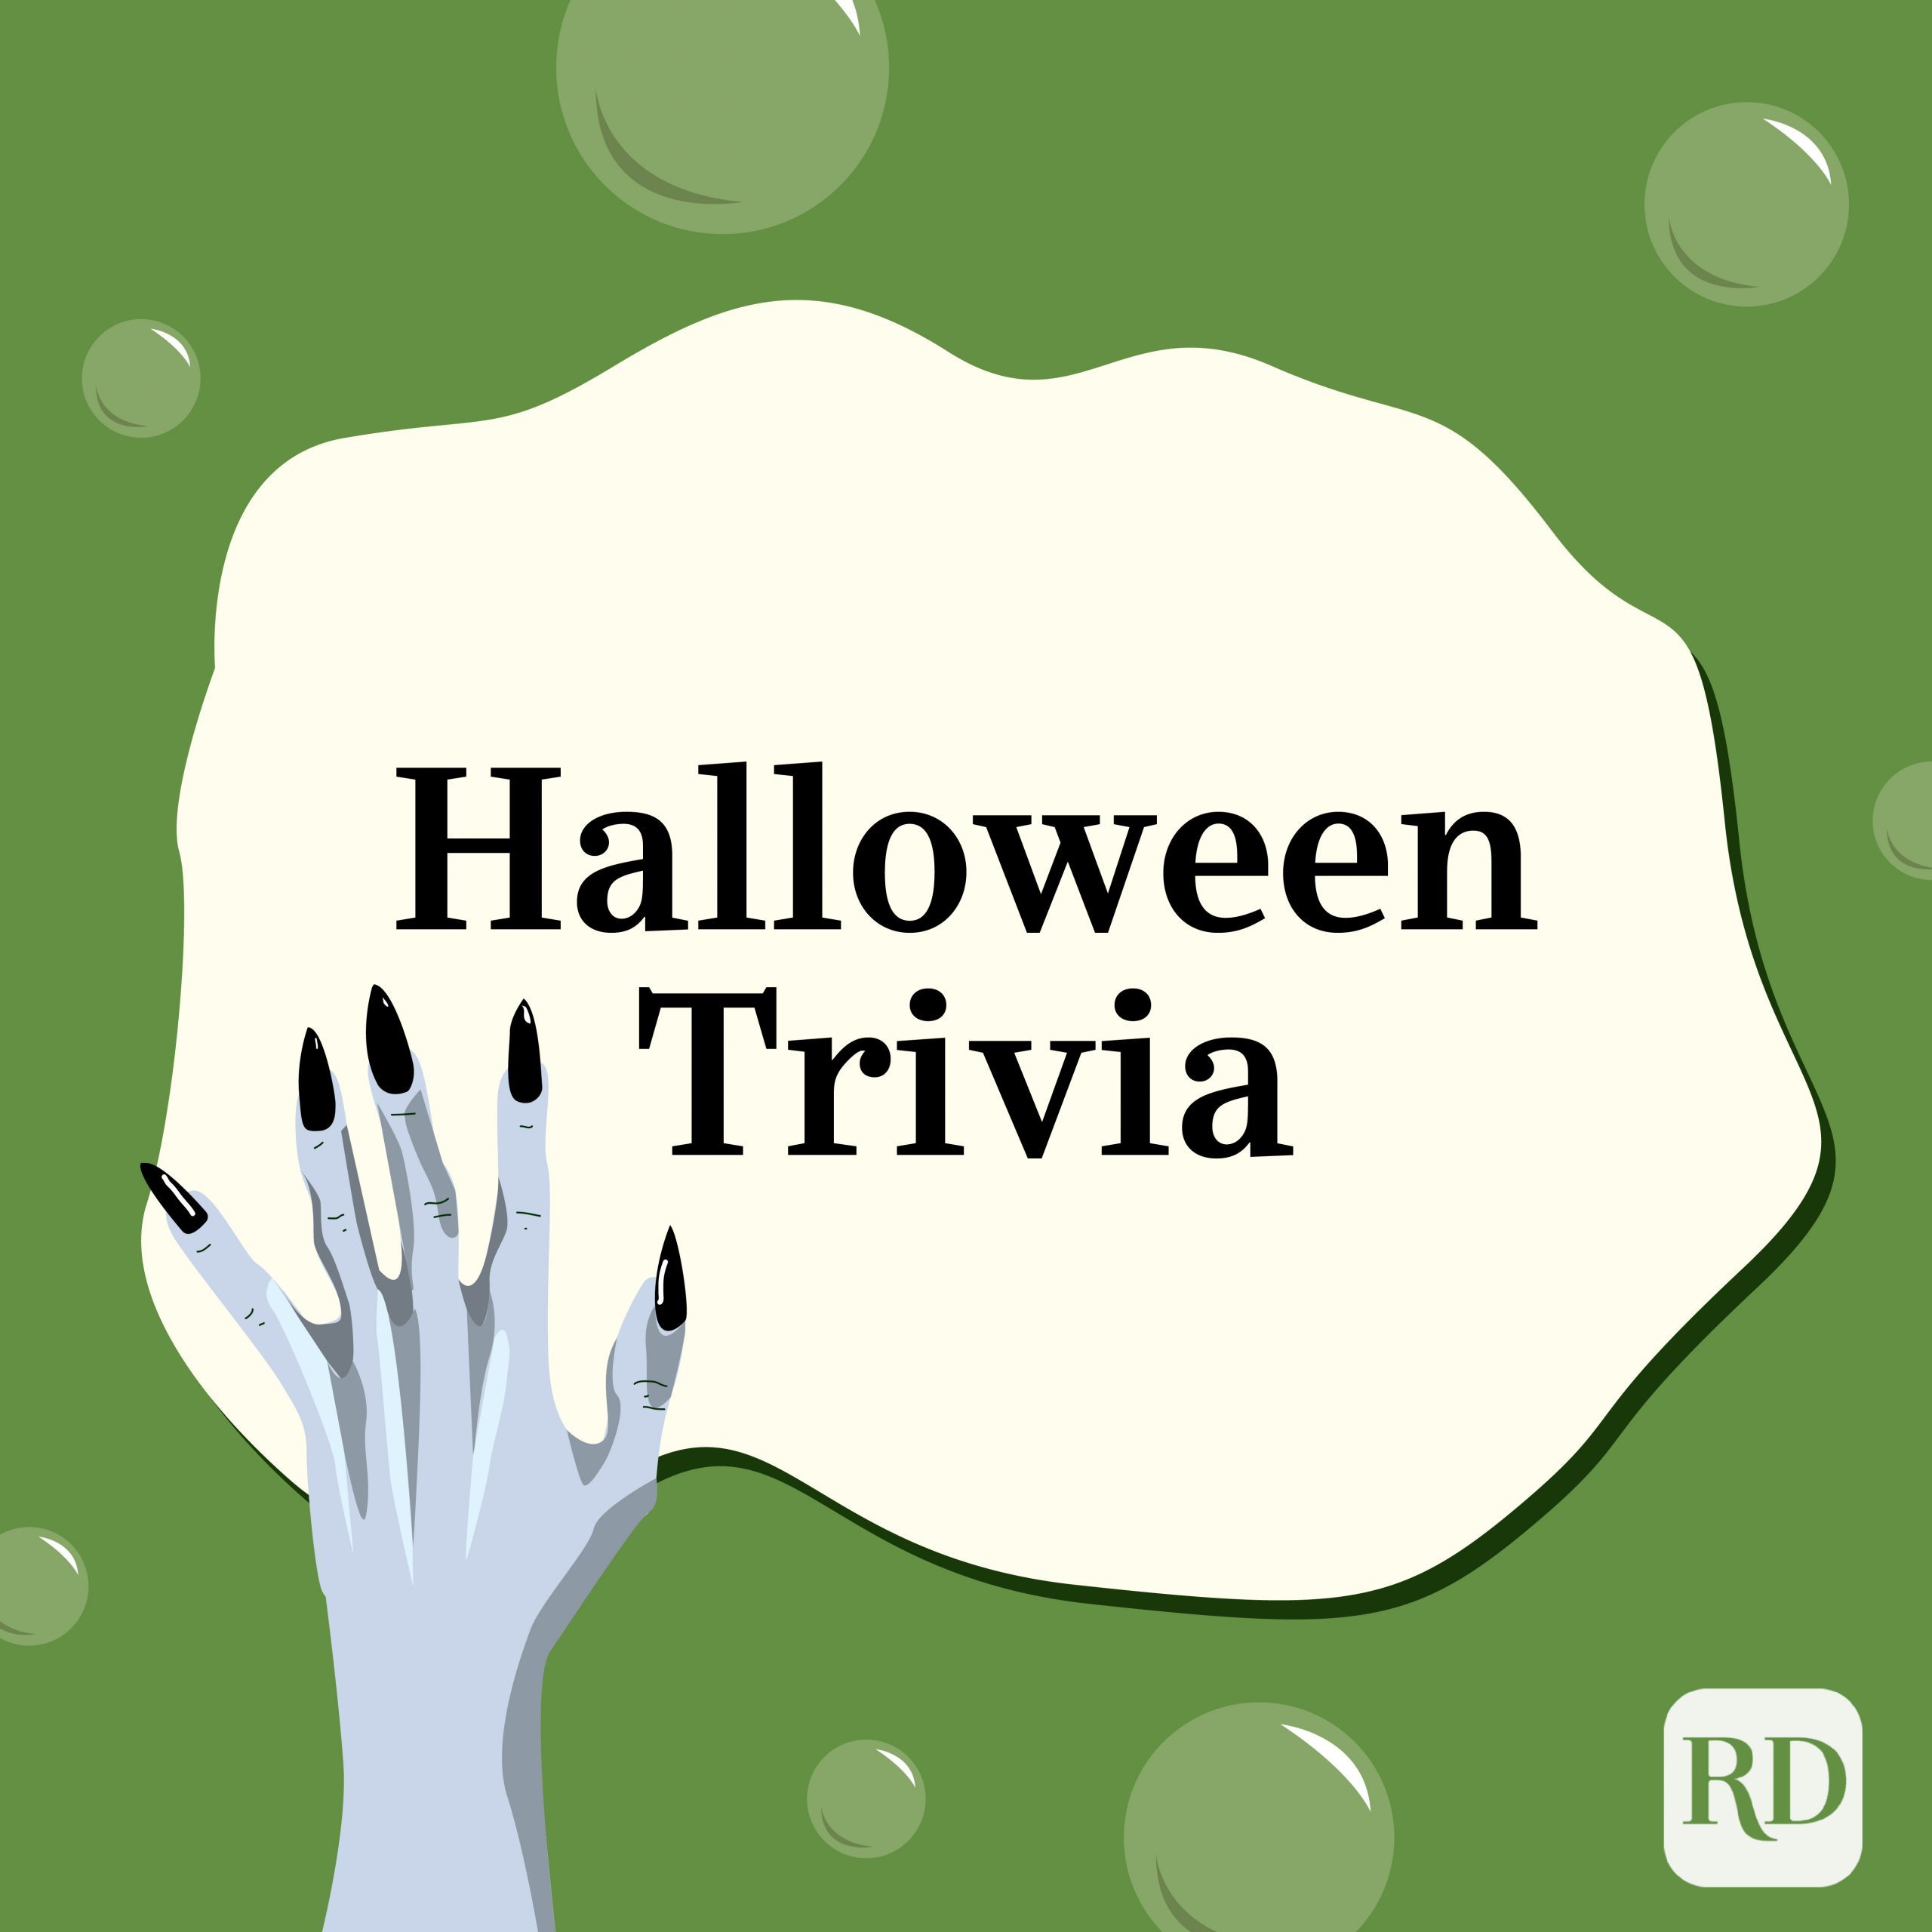 50 preguntas de Halloween (con respuestas) - Trivia de Halloween